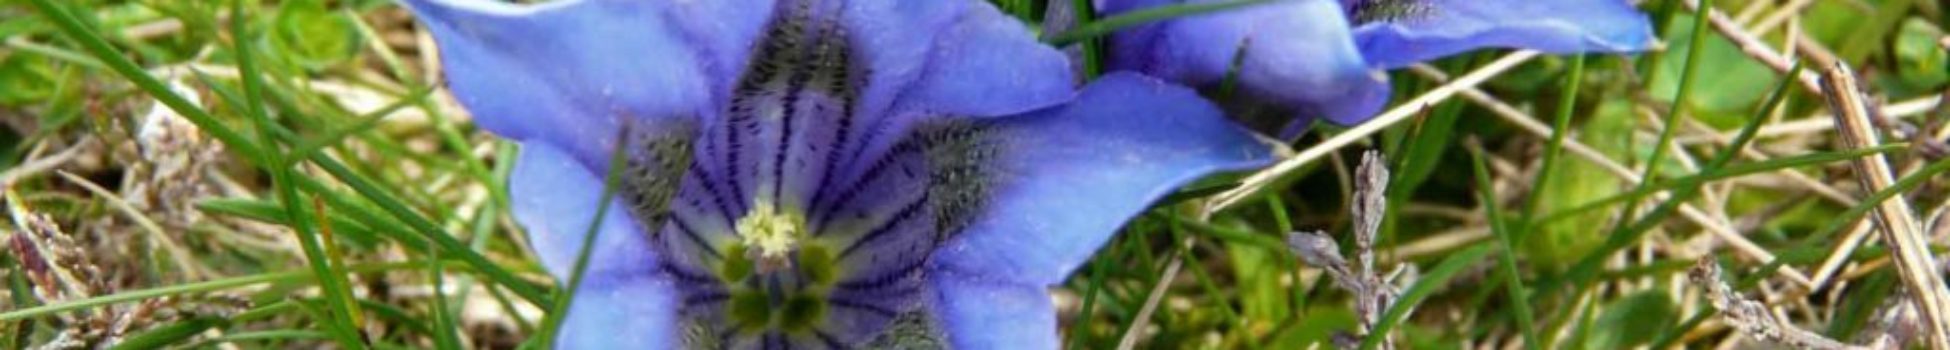 Luz Pura Floral Genciana-Ilusión. Curso online flores de Bach